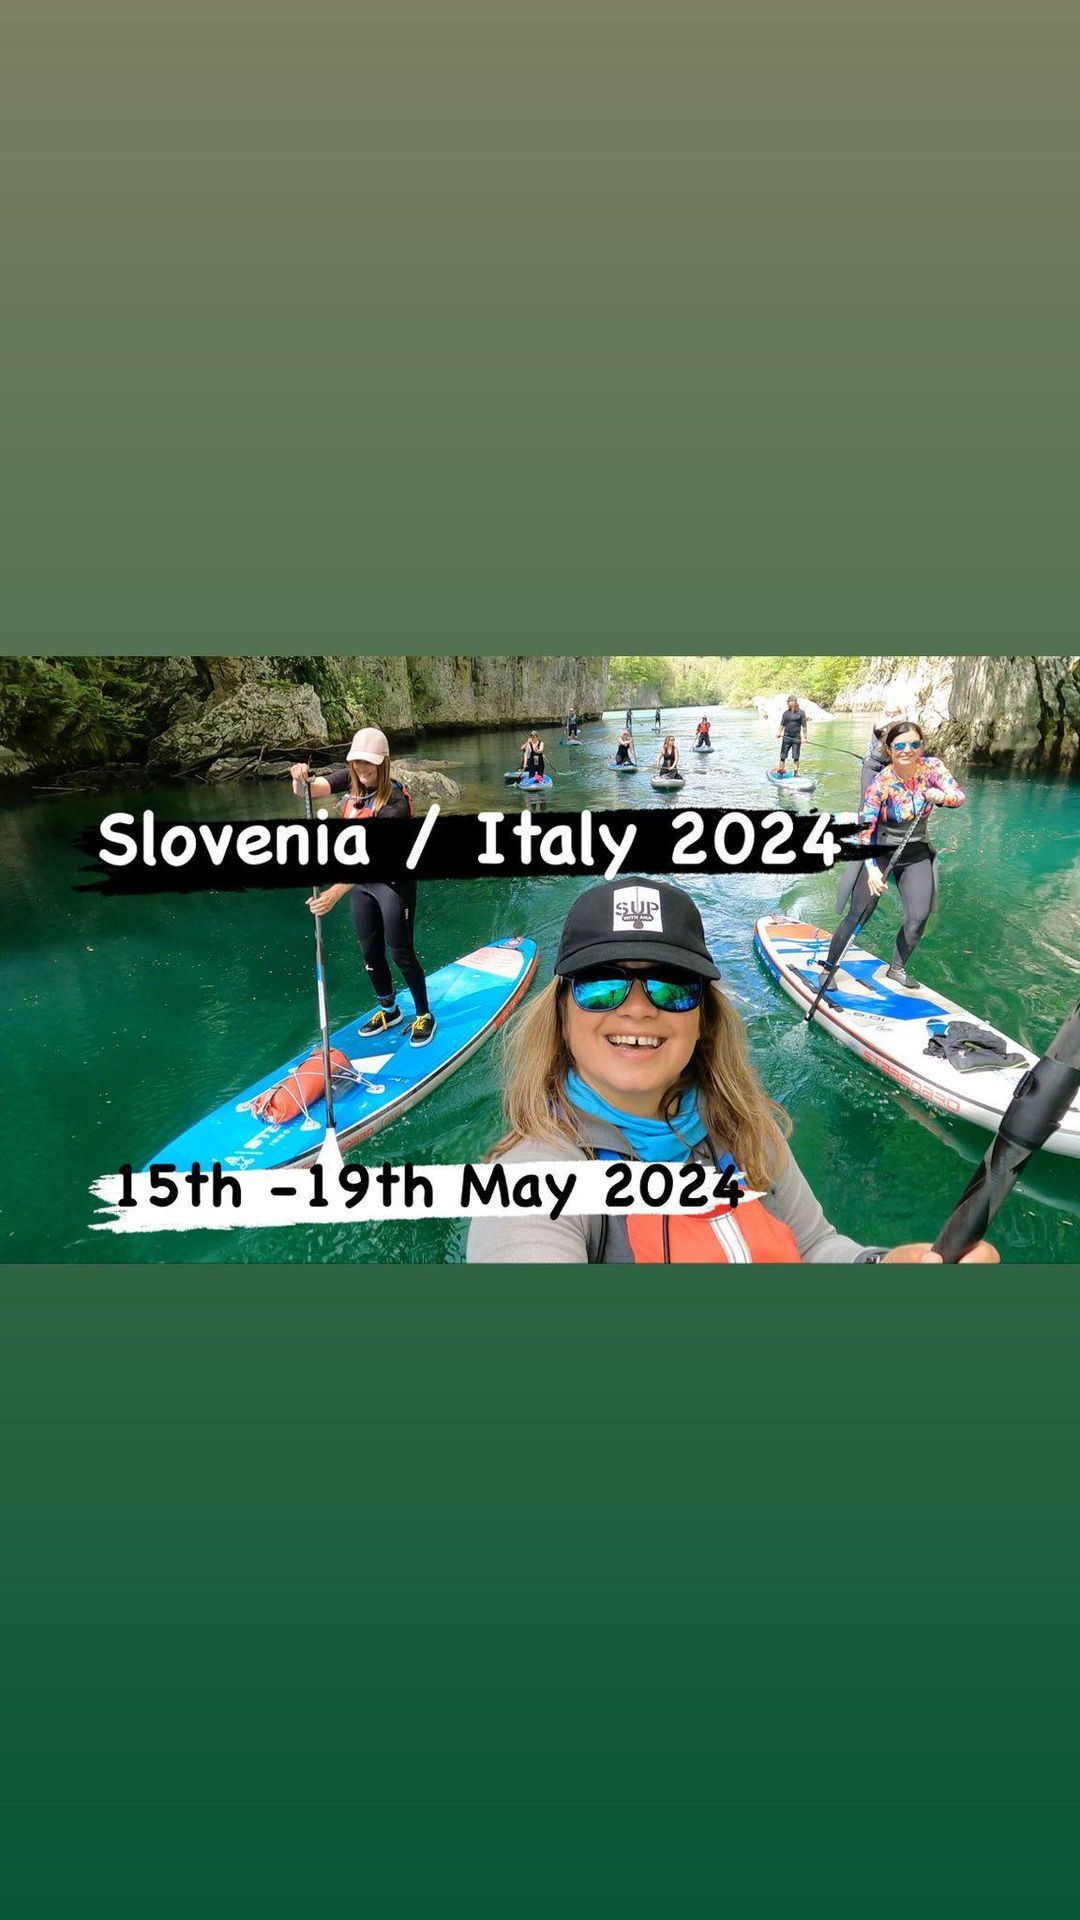  Slovenia\/Italy 